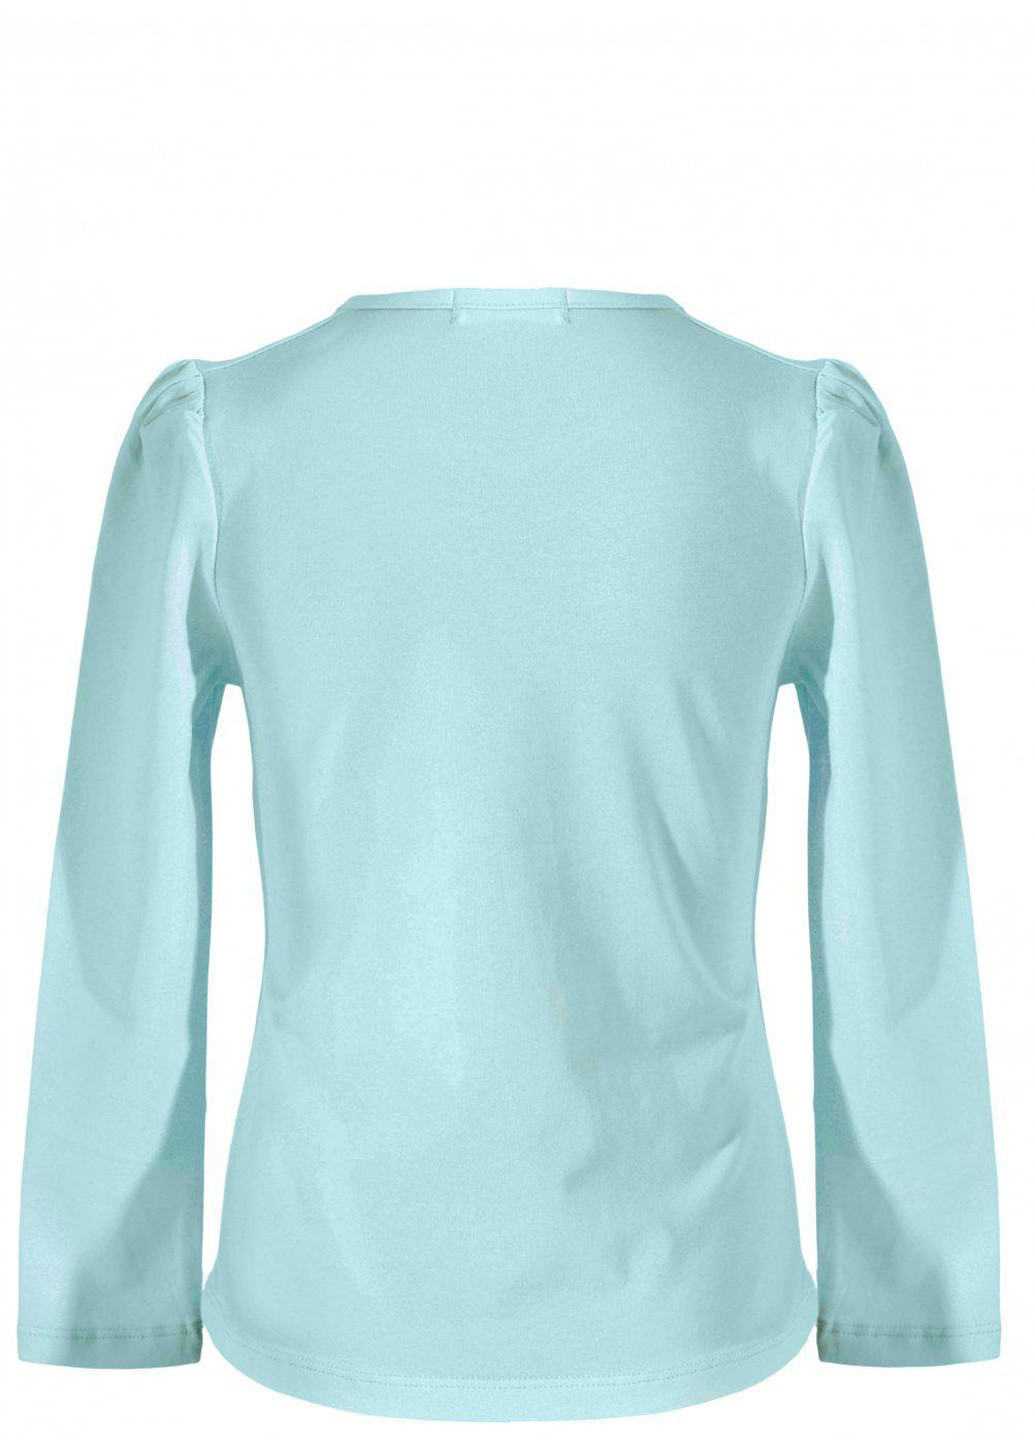 Синя футболки батник дівчинка (w019-132) Lemanta